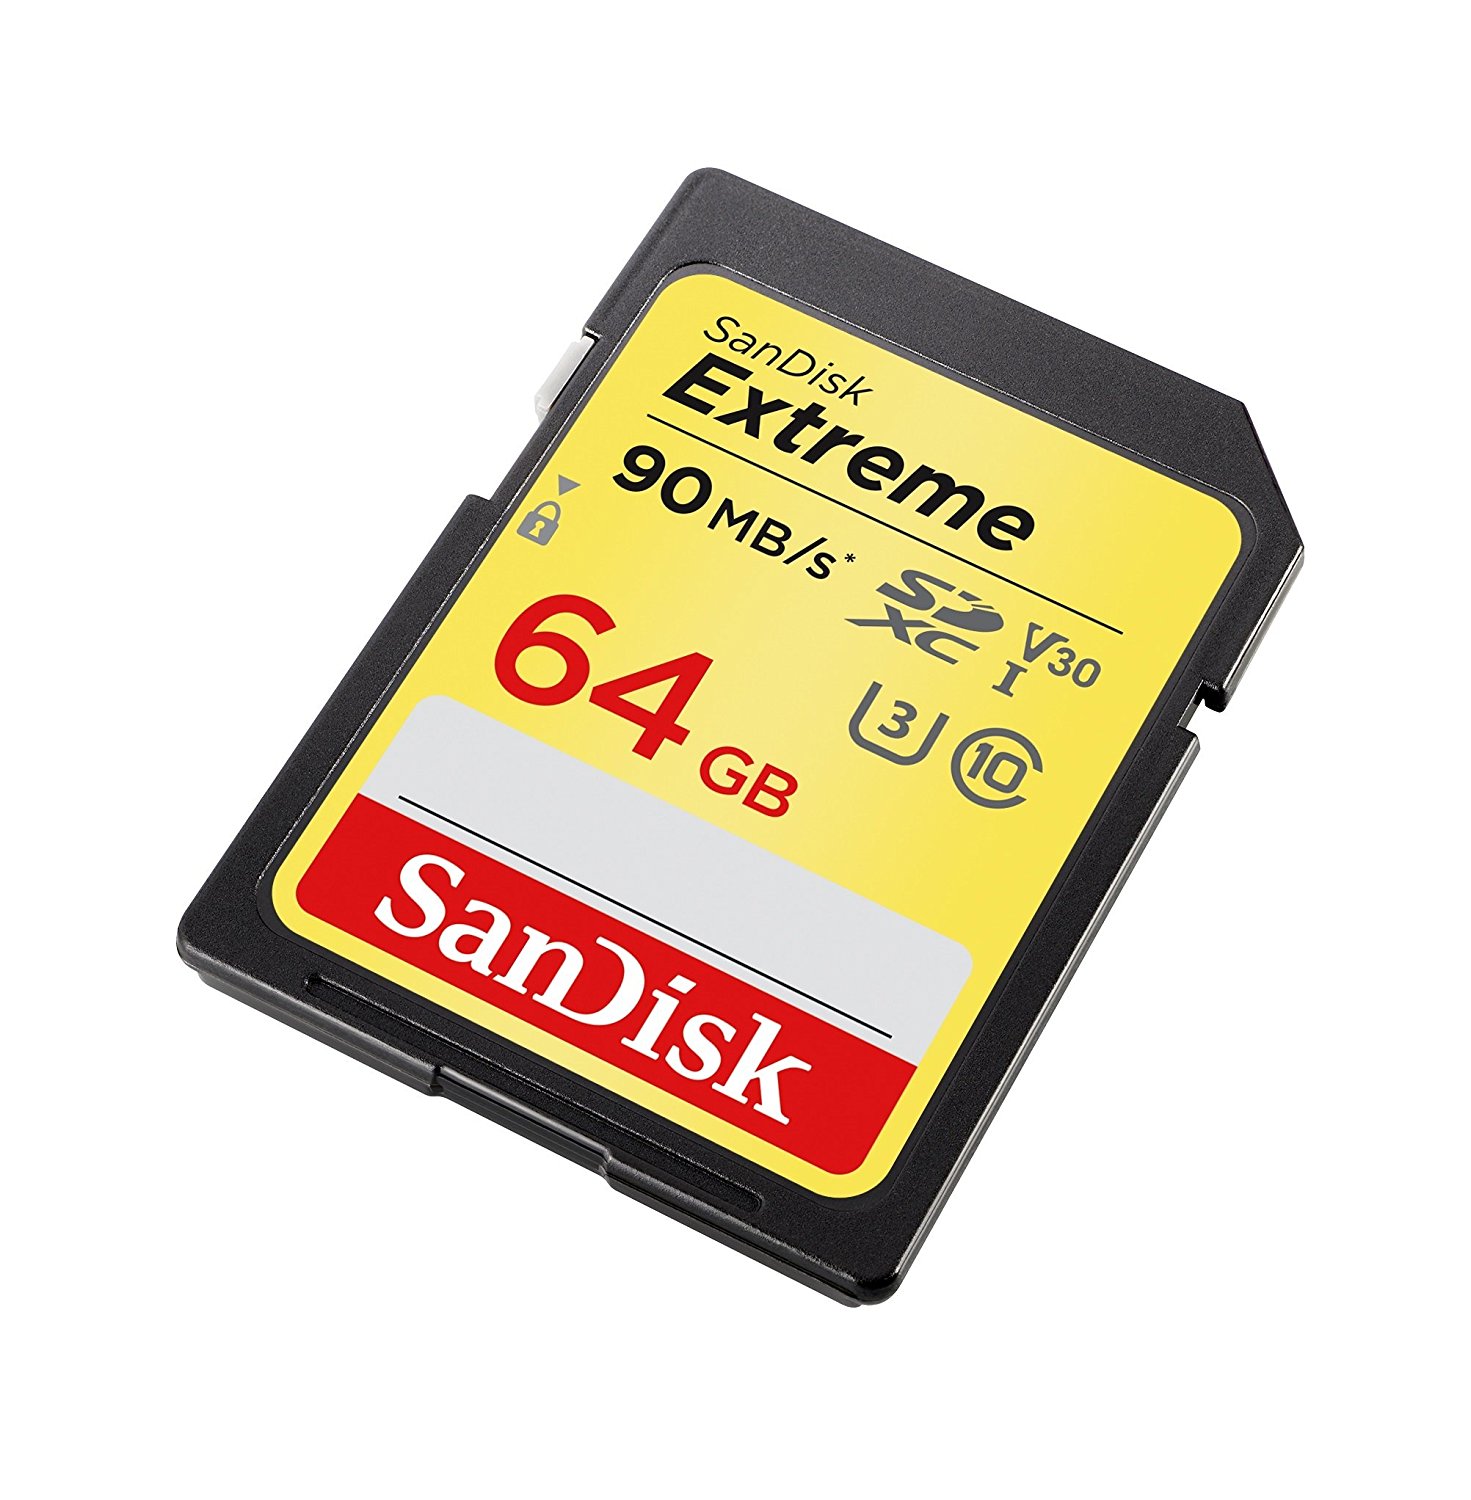 Sandisk Extreme SDXC UHS-I Card 64GB - image 4 of 4